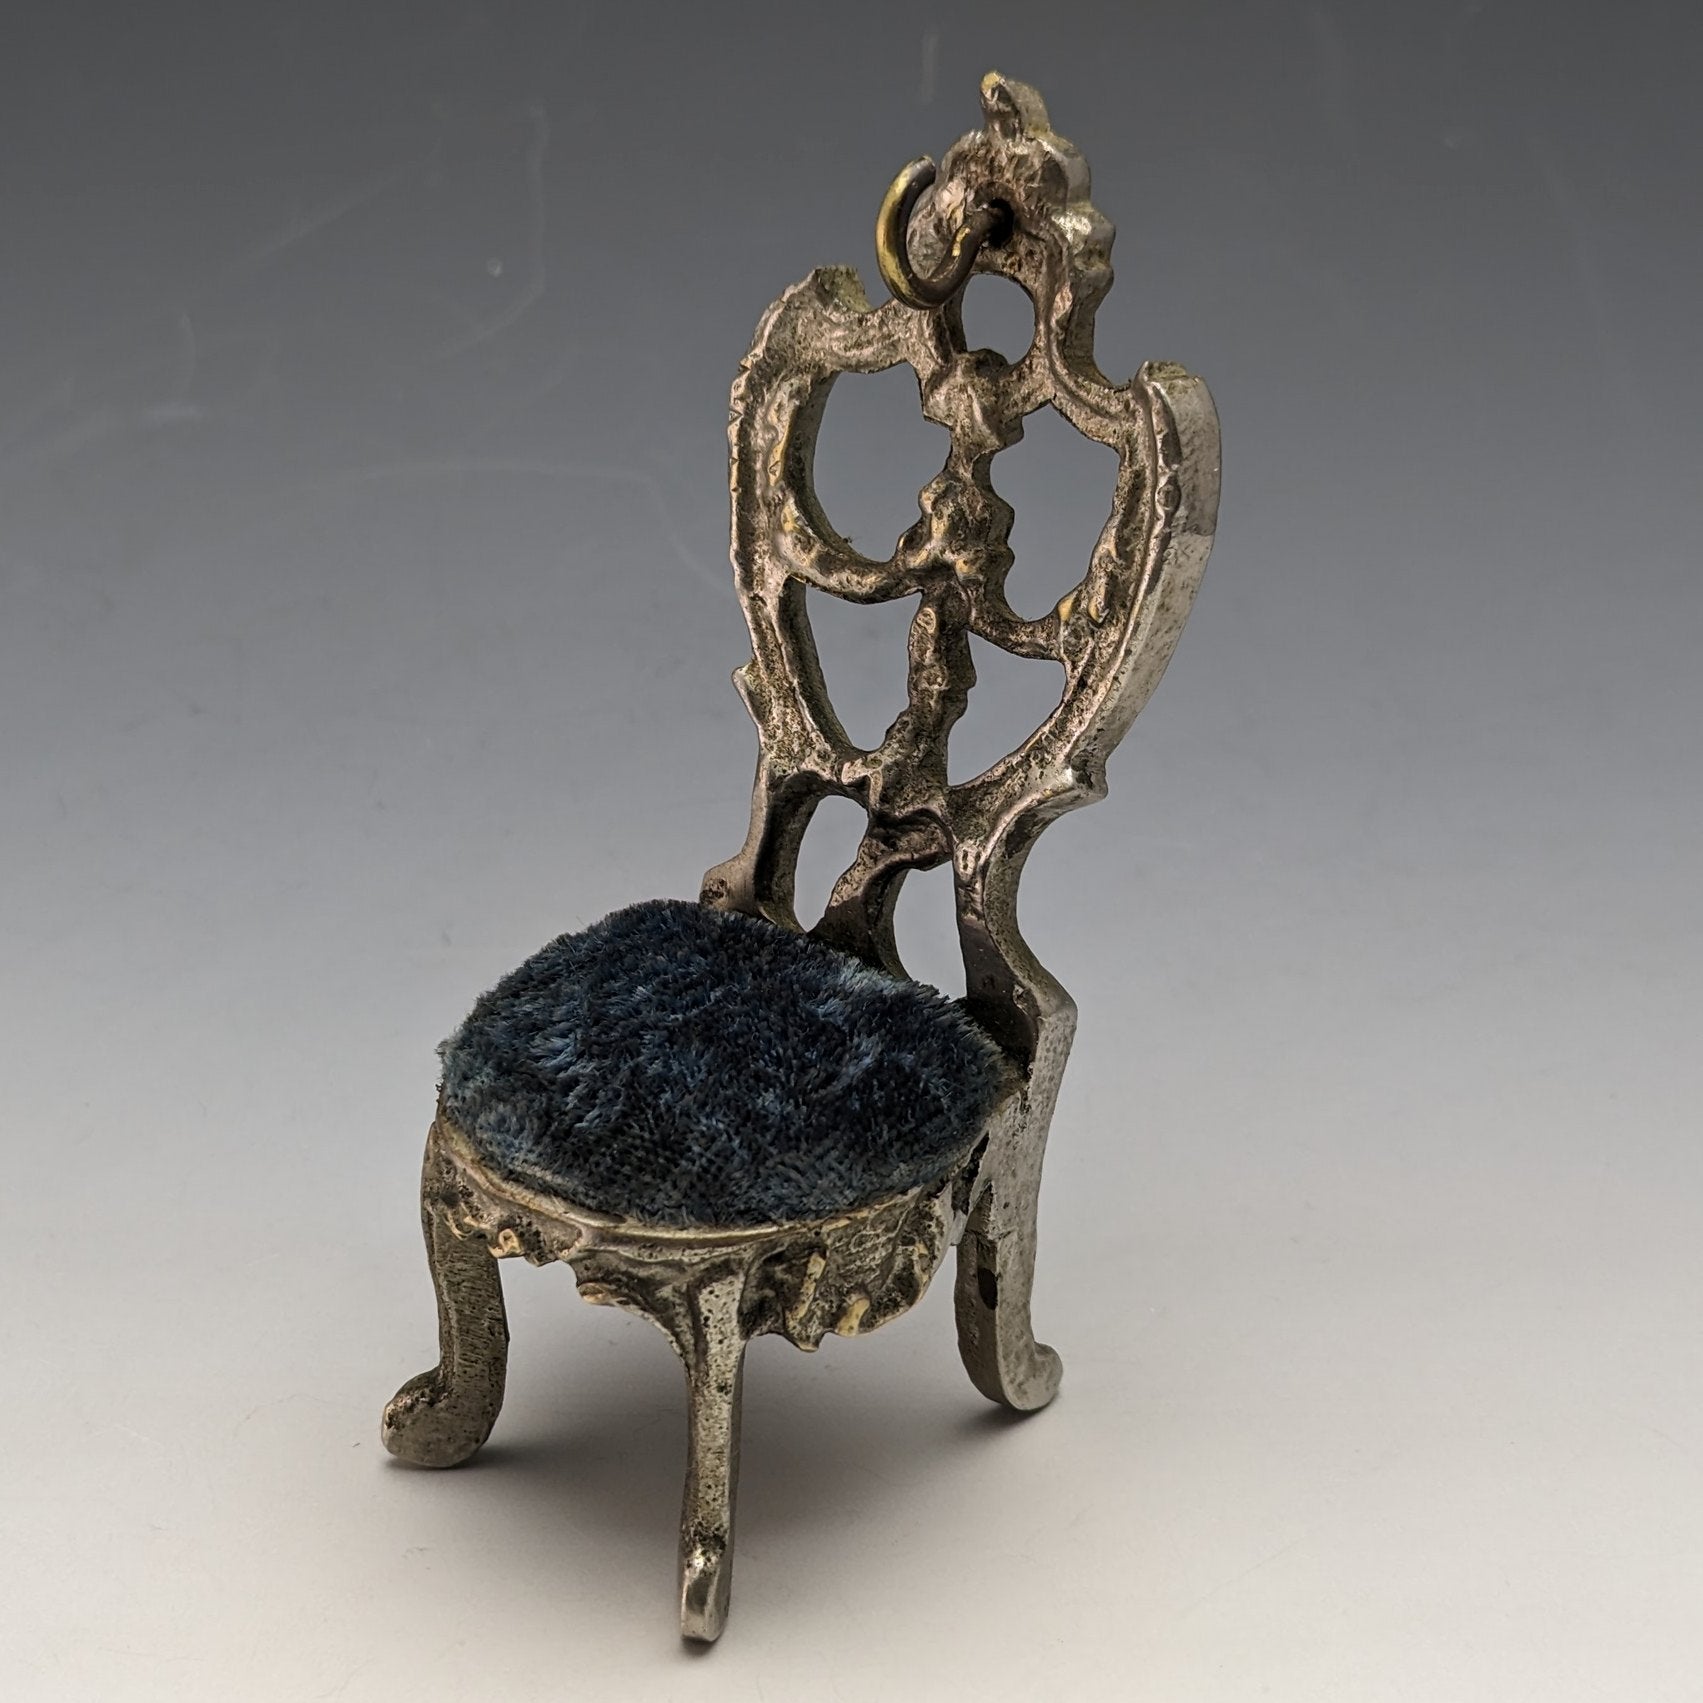 目立った傷や汚れのない美品機能1920年代 真鍮製 椅子型 懐中時計ホルダー ブライトレッドシート